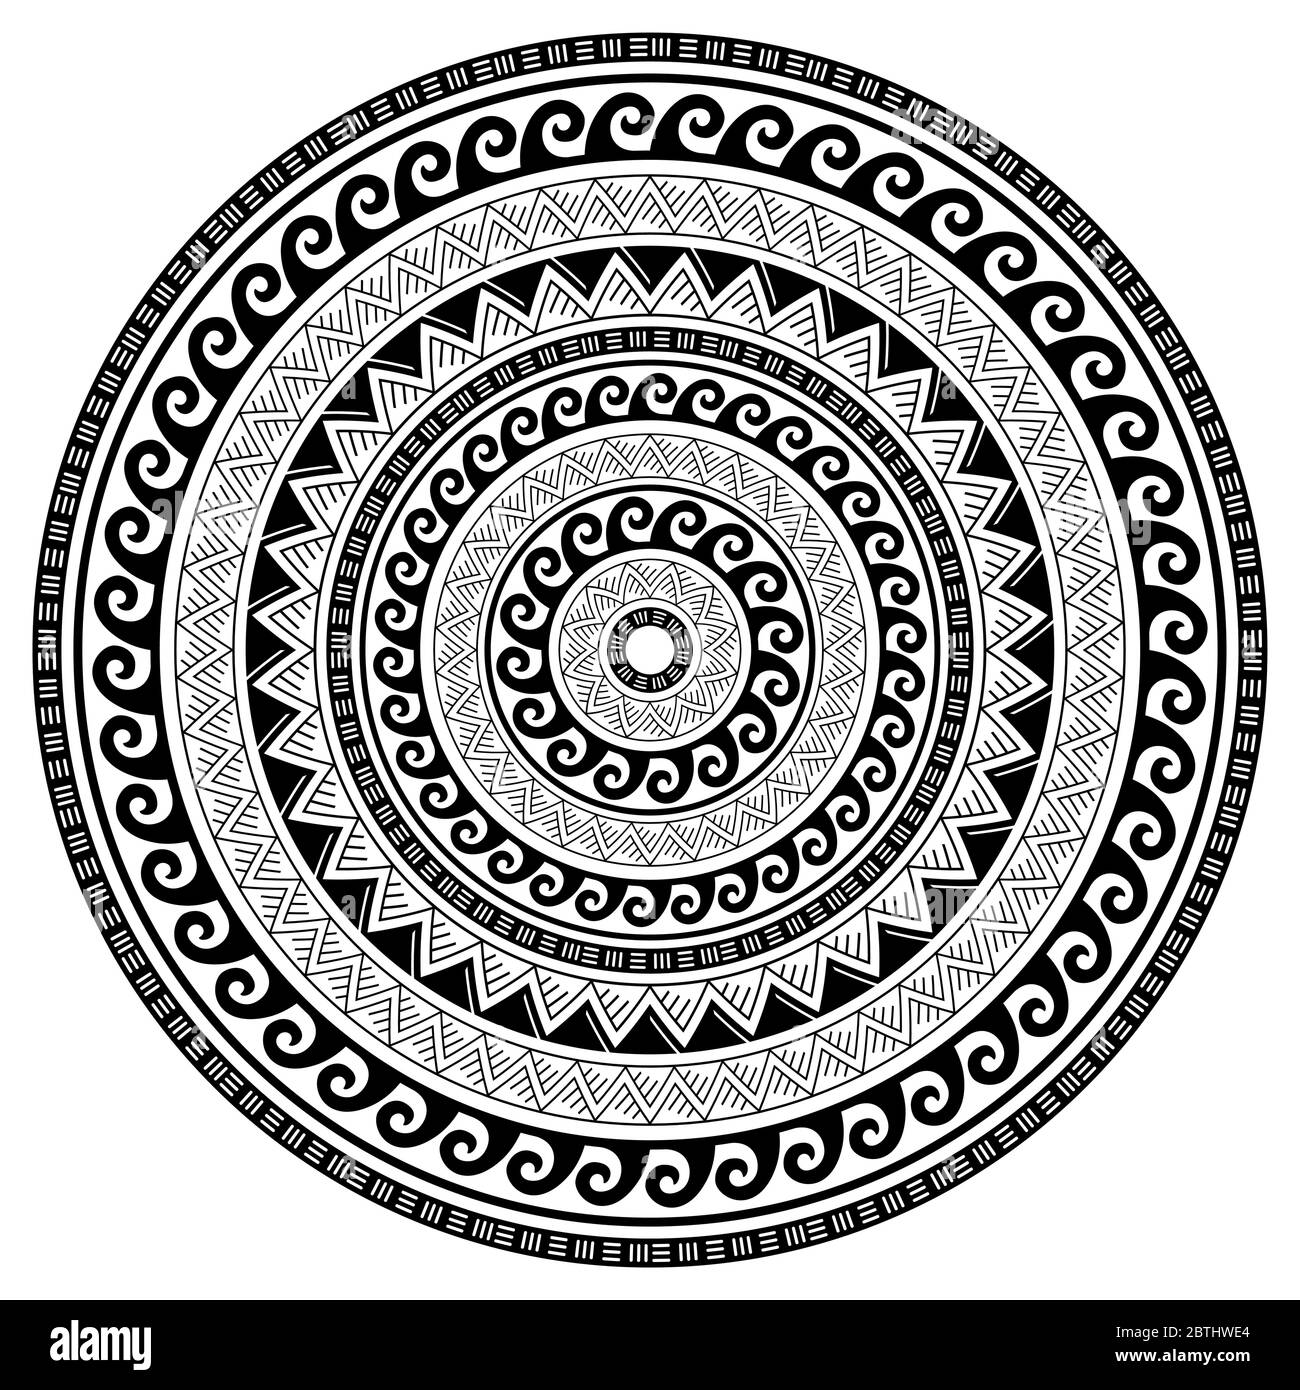 Tribal geometrisches Mandala Vektor Design, polynesisches hawaiianisches Tattoo Stil Muster mit Wellen, Dreiecken und abstrakten Formen Stock Vektor